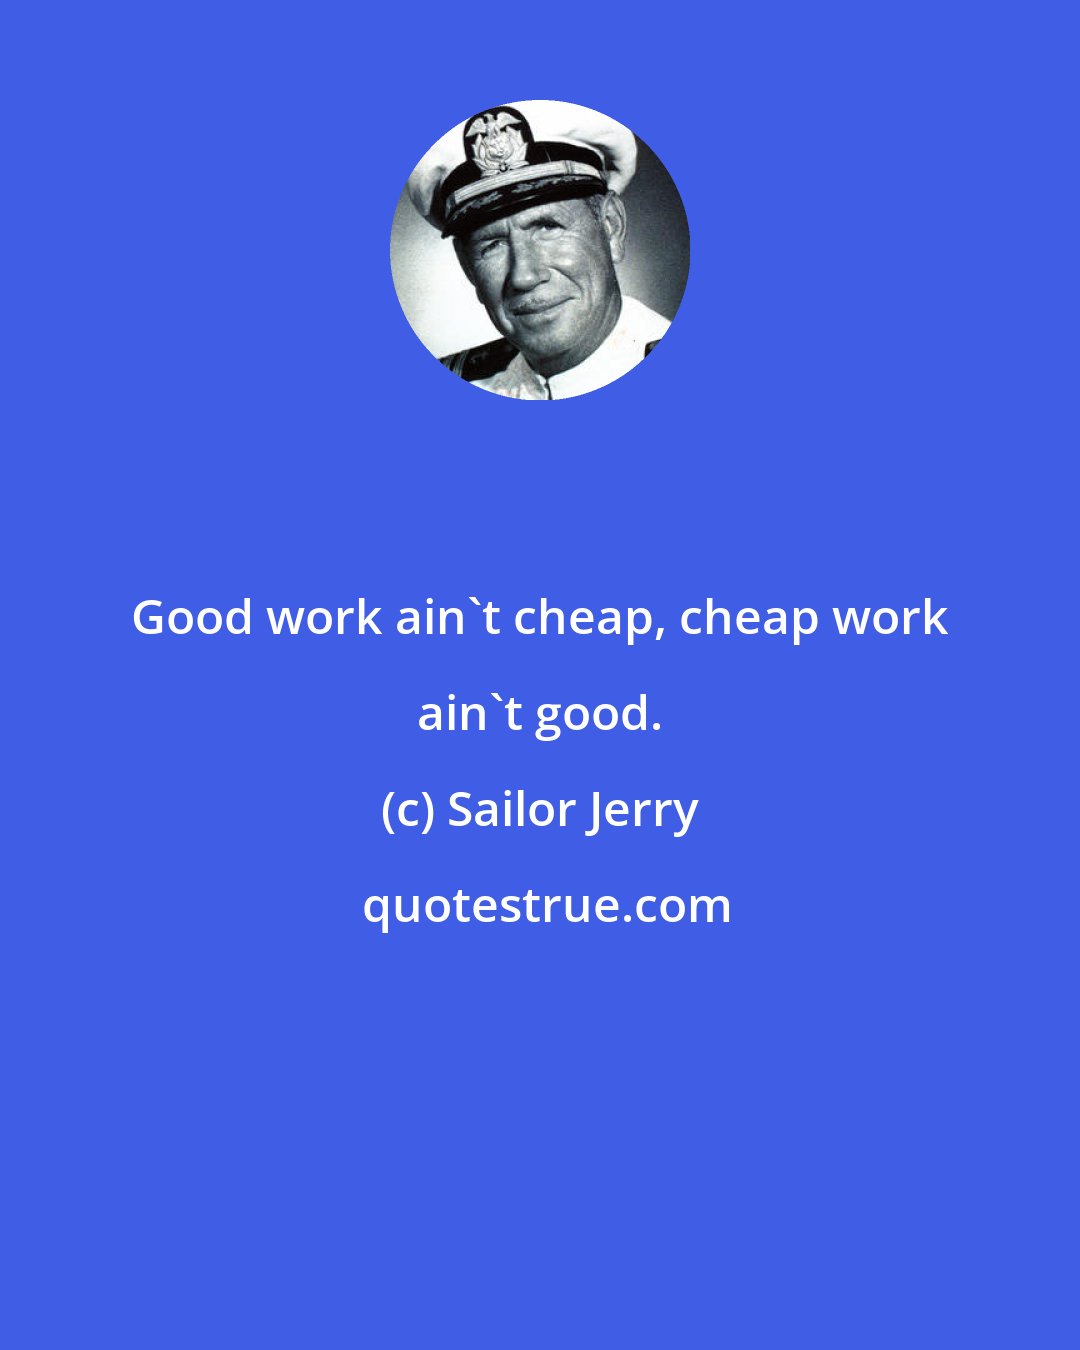 Sailor Jerry: Good work ain't cheap, cheap work ain't good.